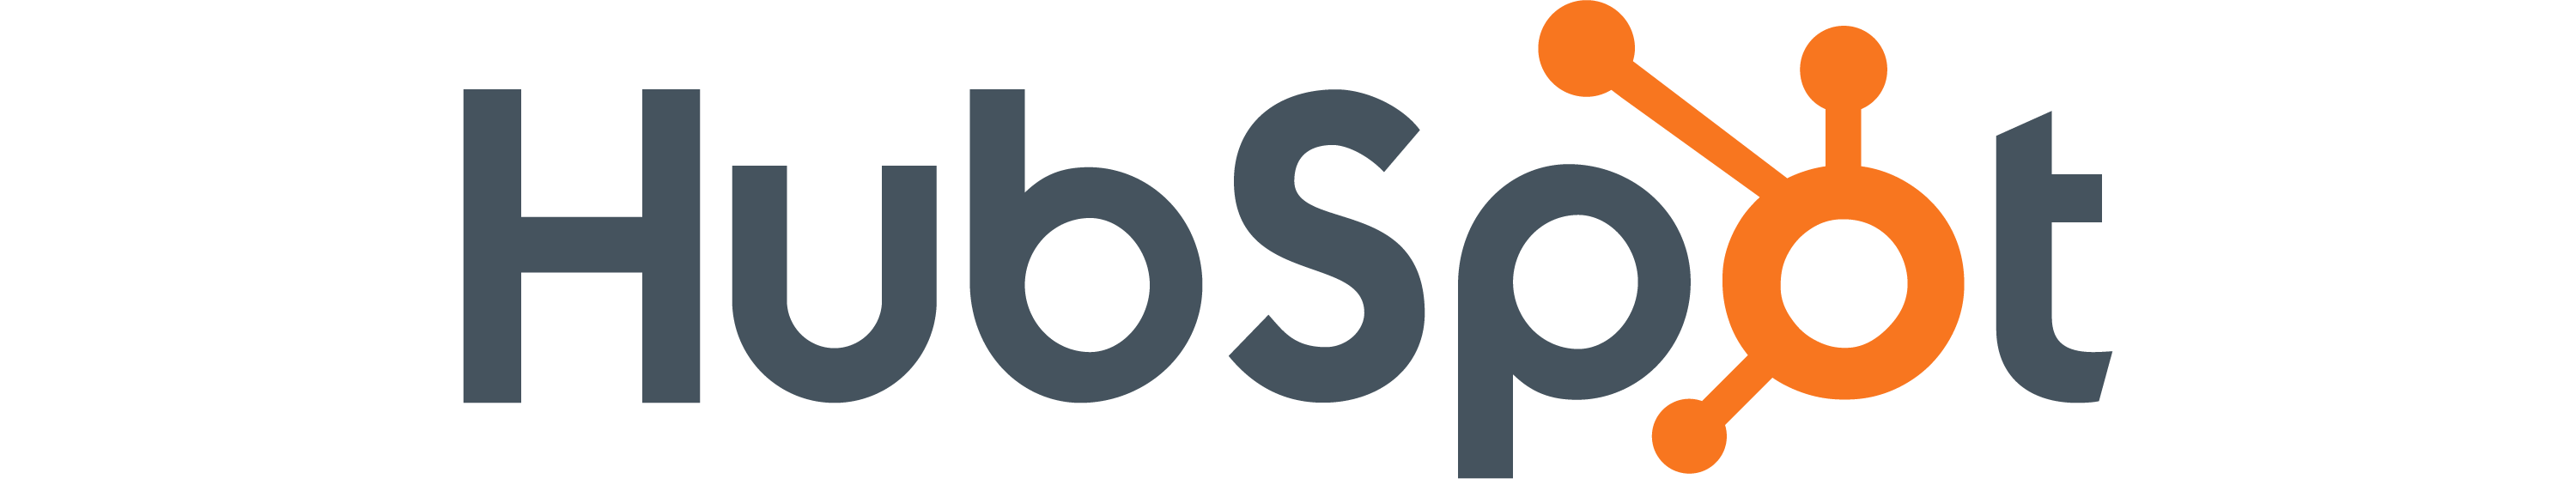 HubSpot_Logo_v02-01